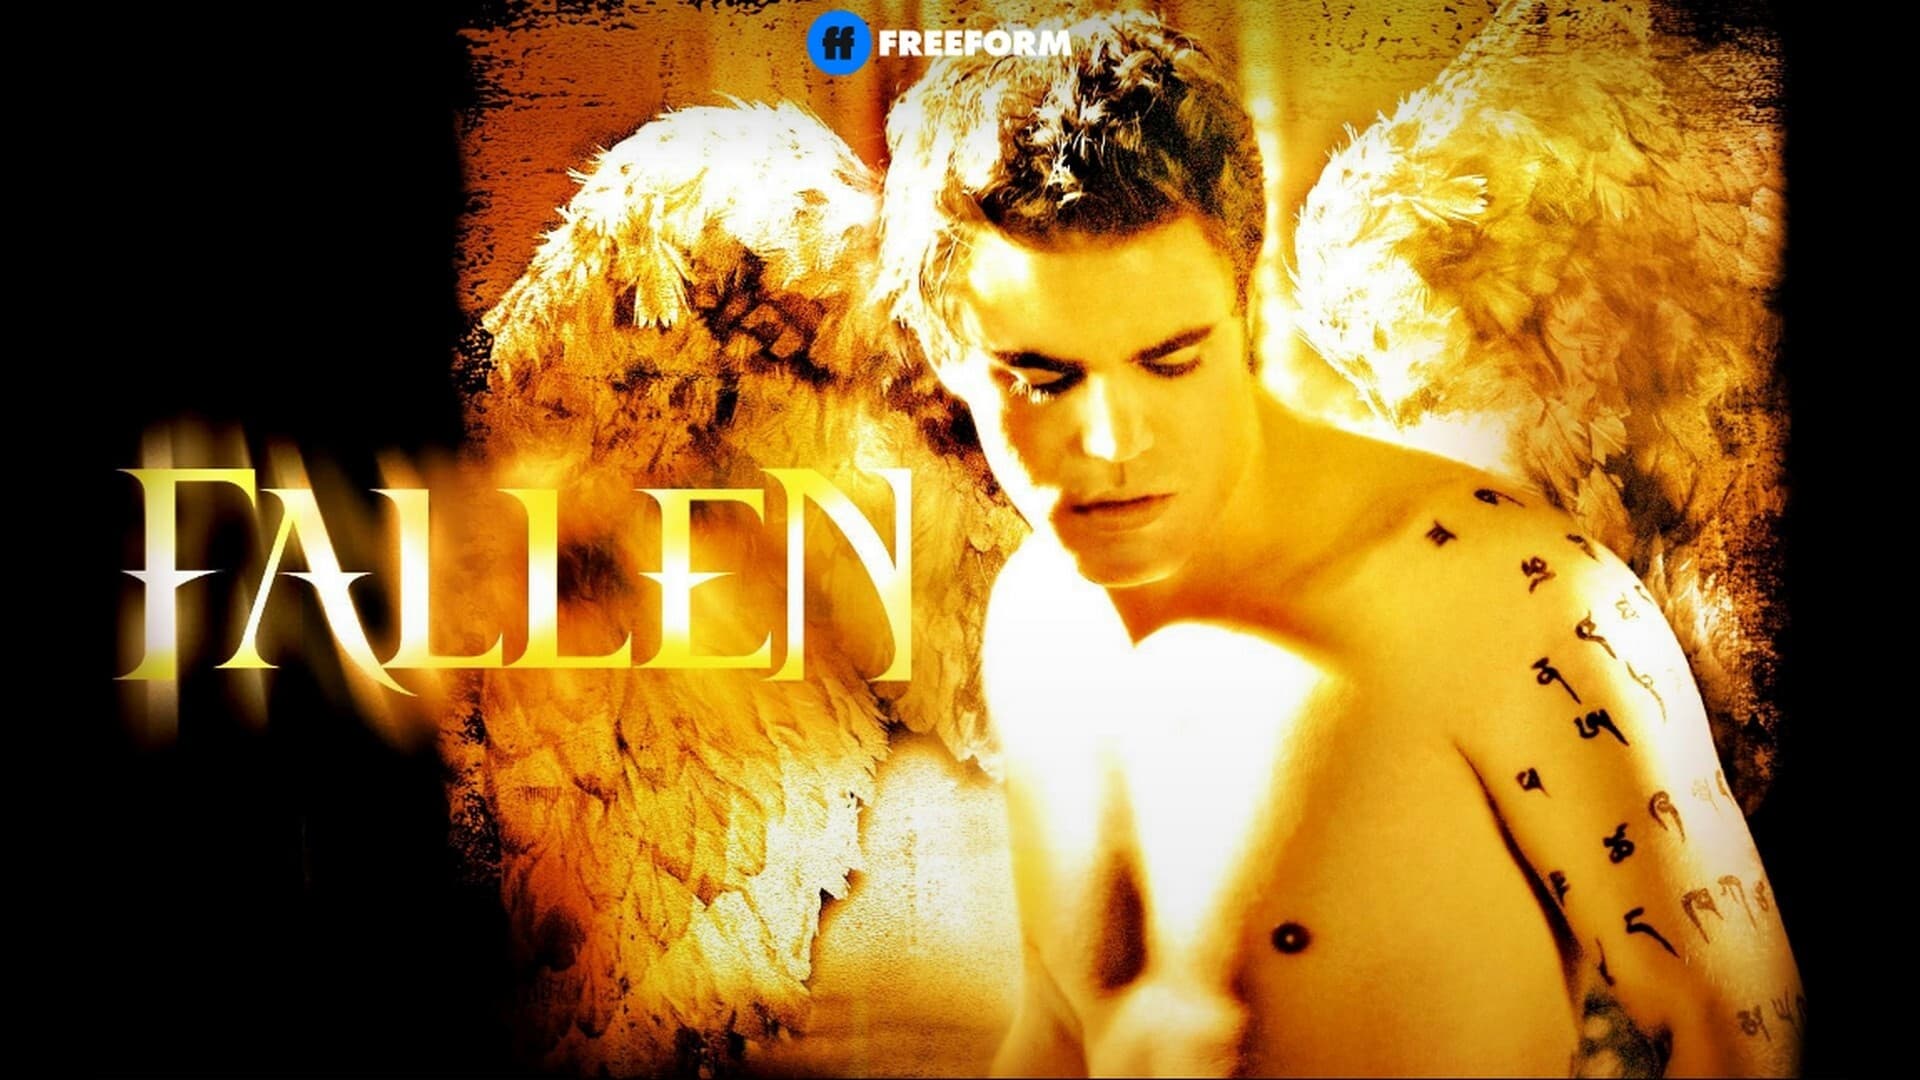 Fallen-angeli caduti (2006)